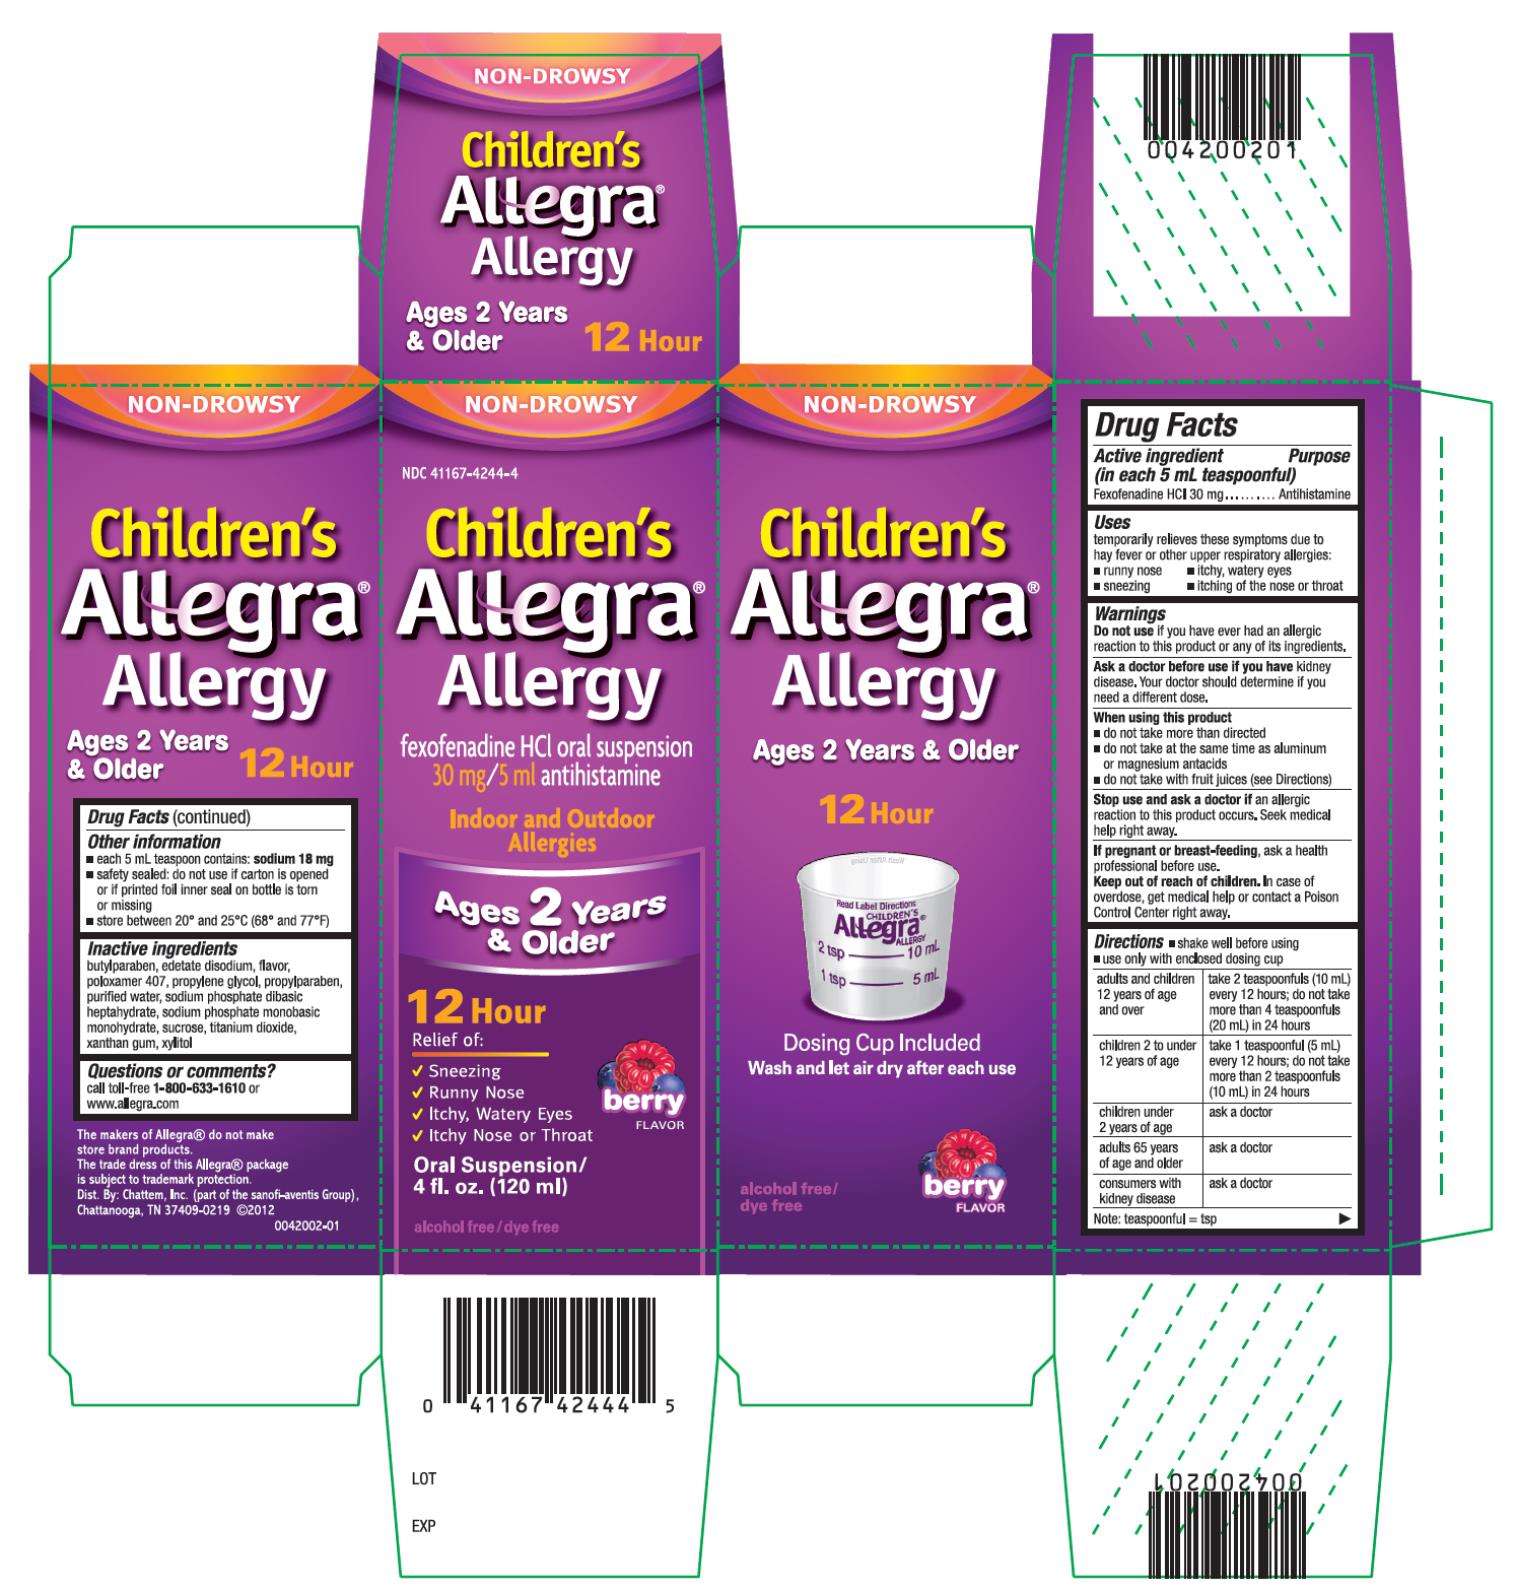 Childrens Allegra Allergy